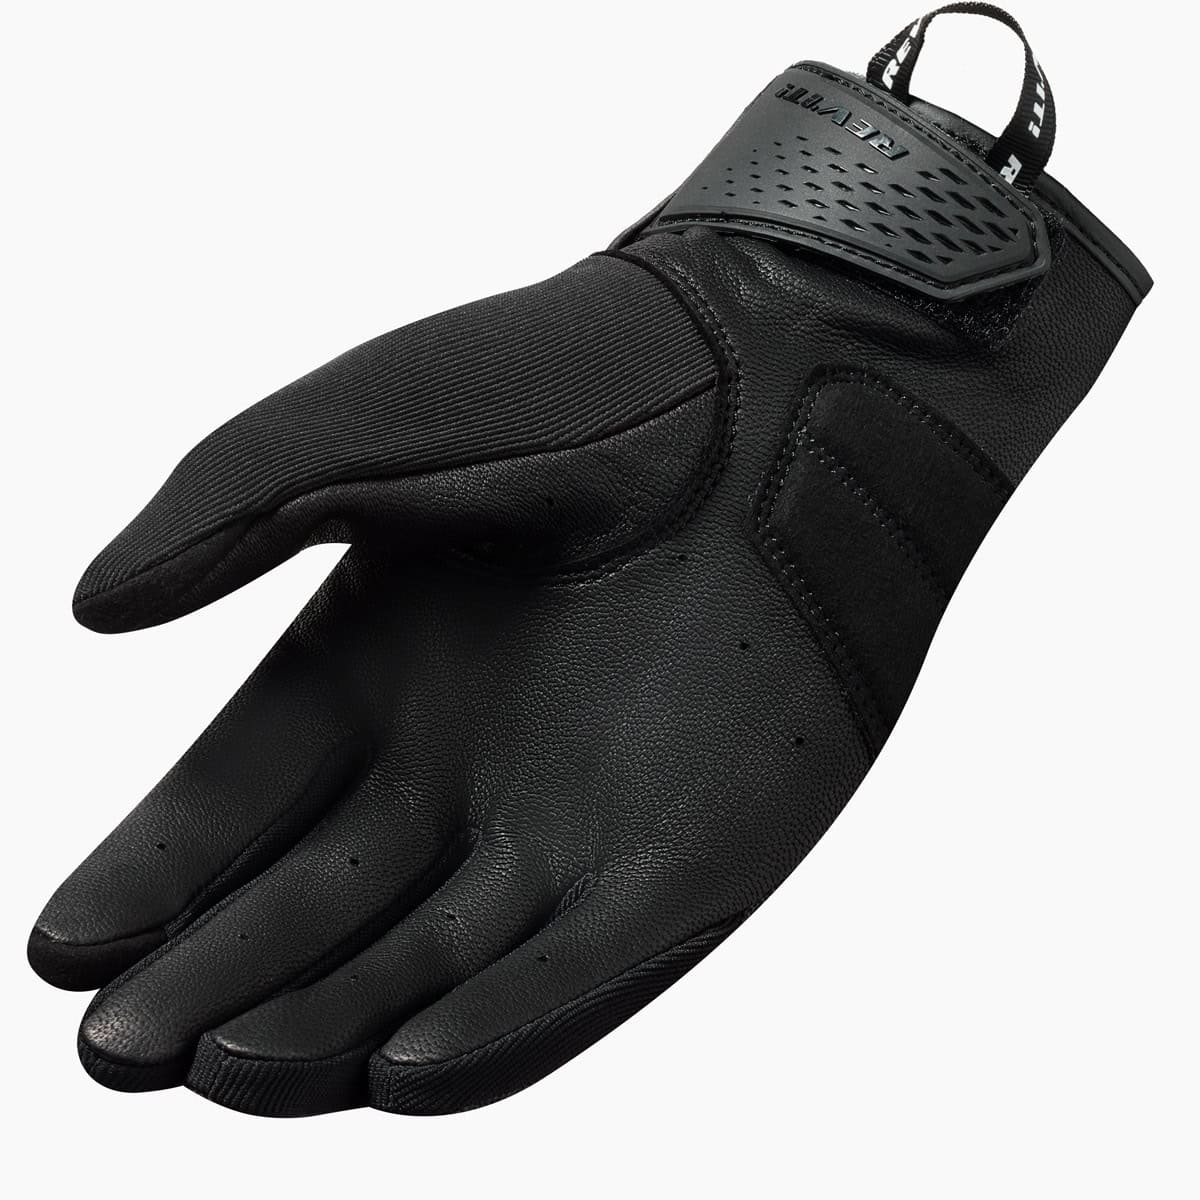 Rev It! Mosca 2 Gloves Mens - Black palm details